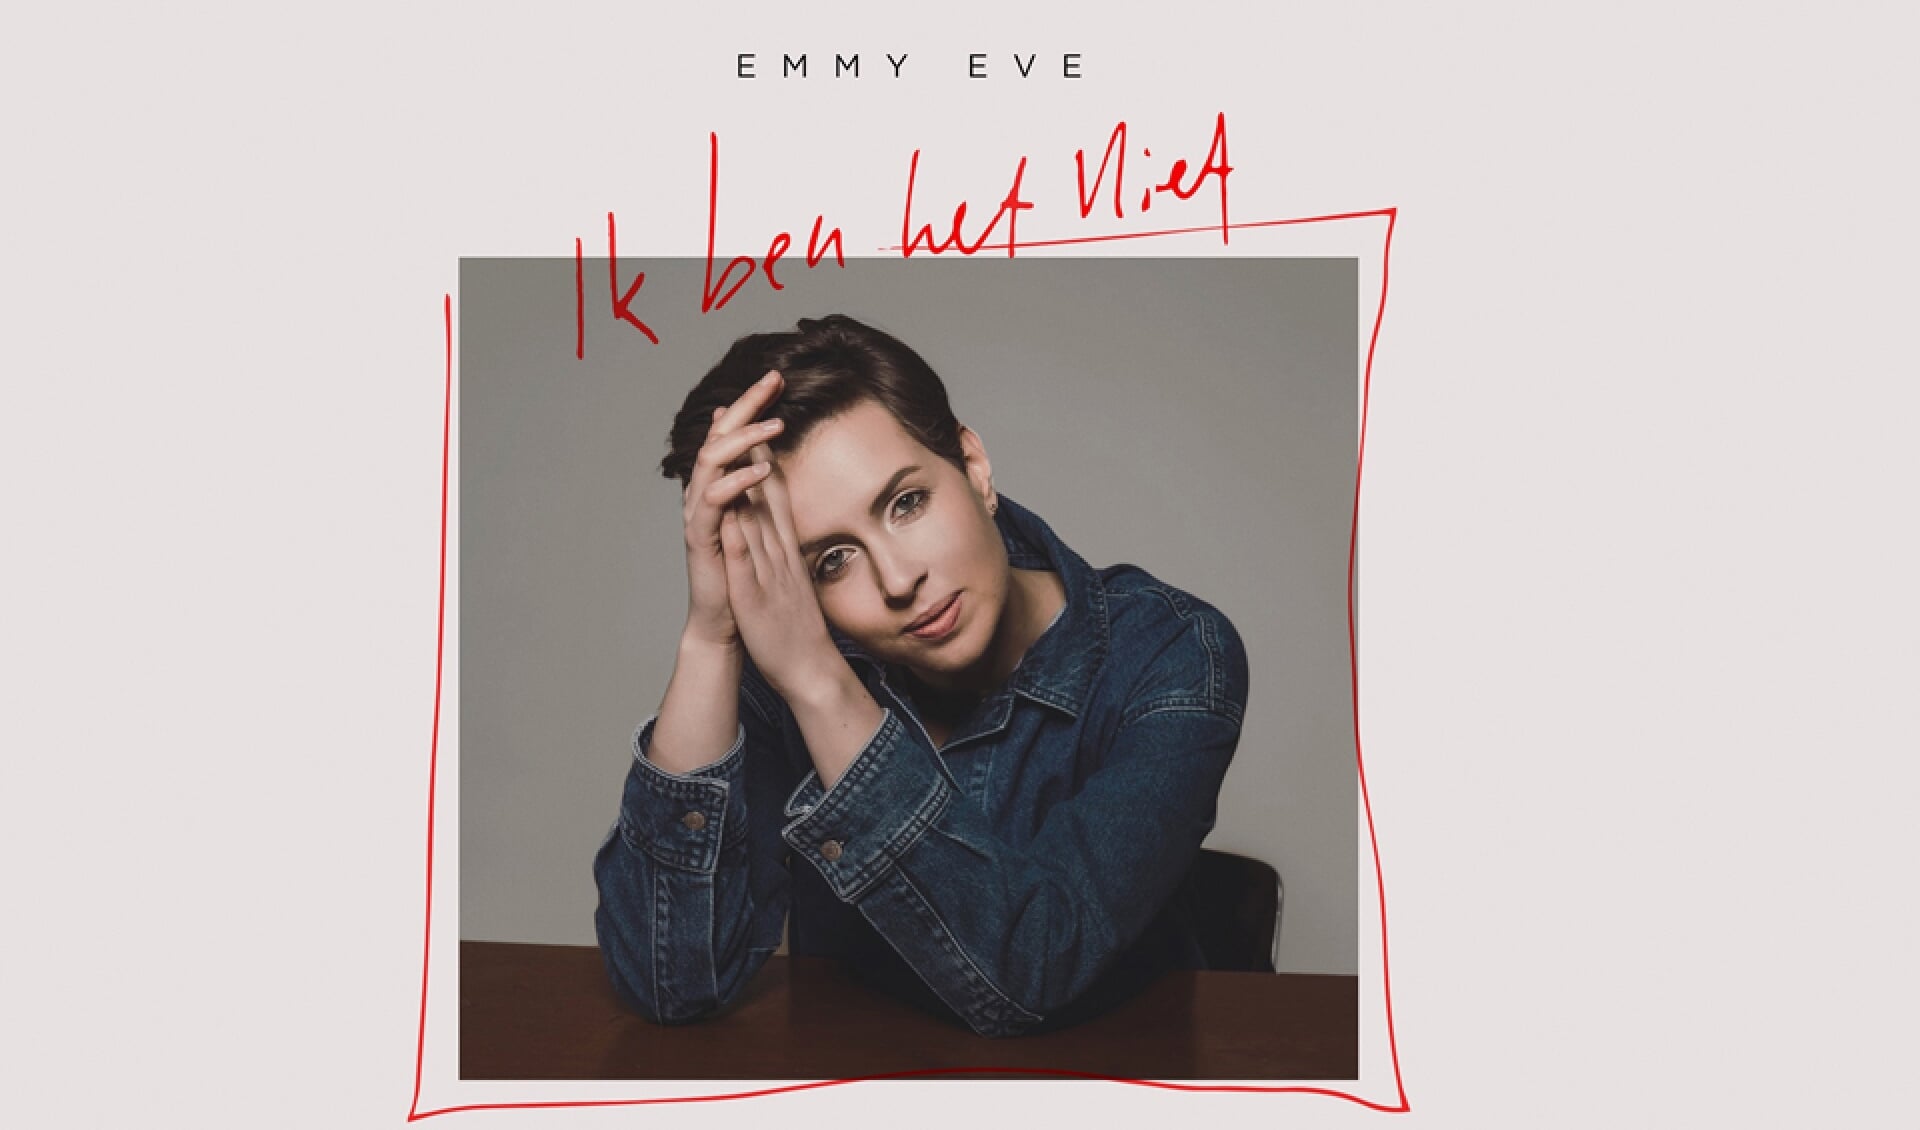 De nieuwe single van Emmy Eve gaat op 10 maart in première en is dan te beluisteren op alle streamingplatforms. 